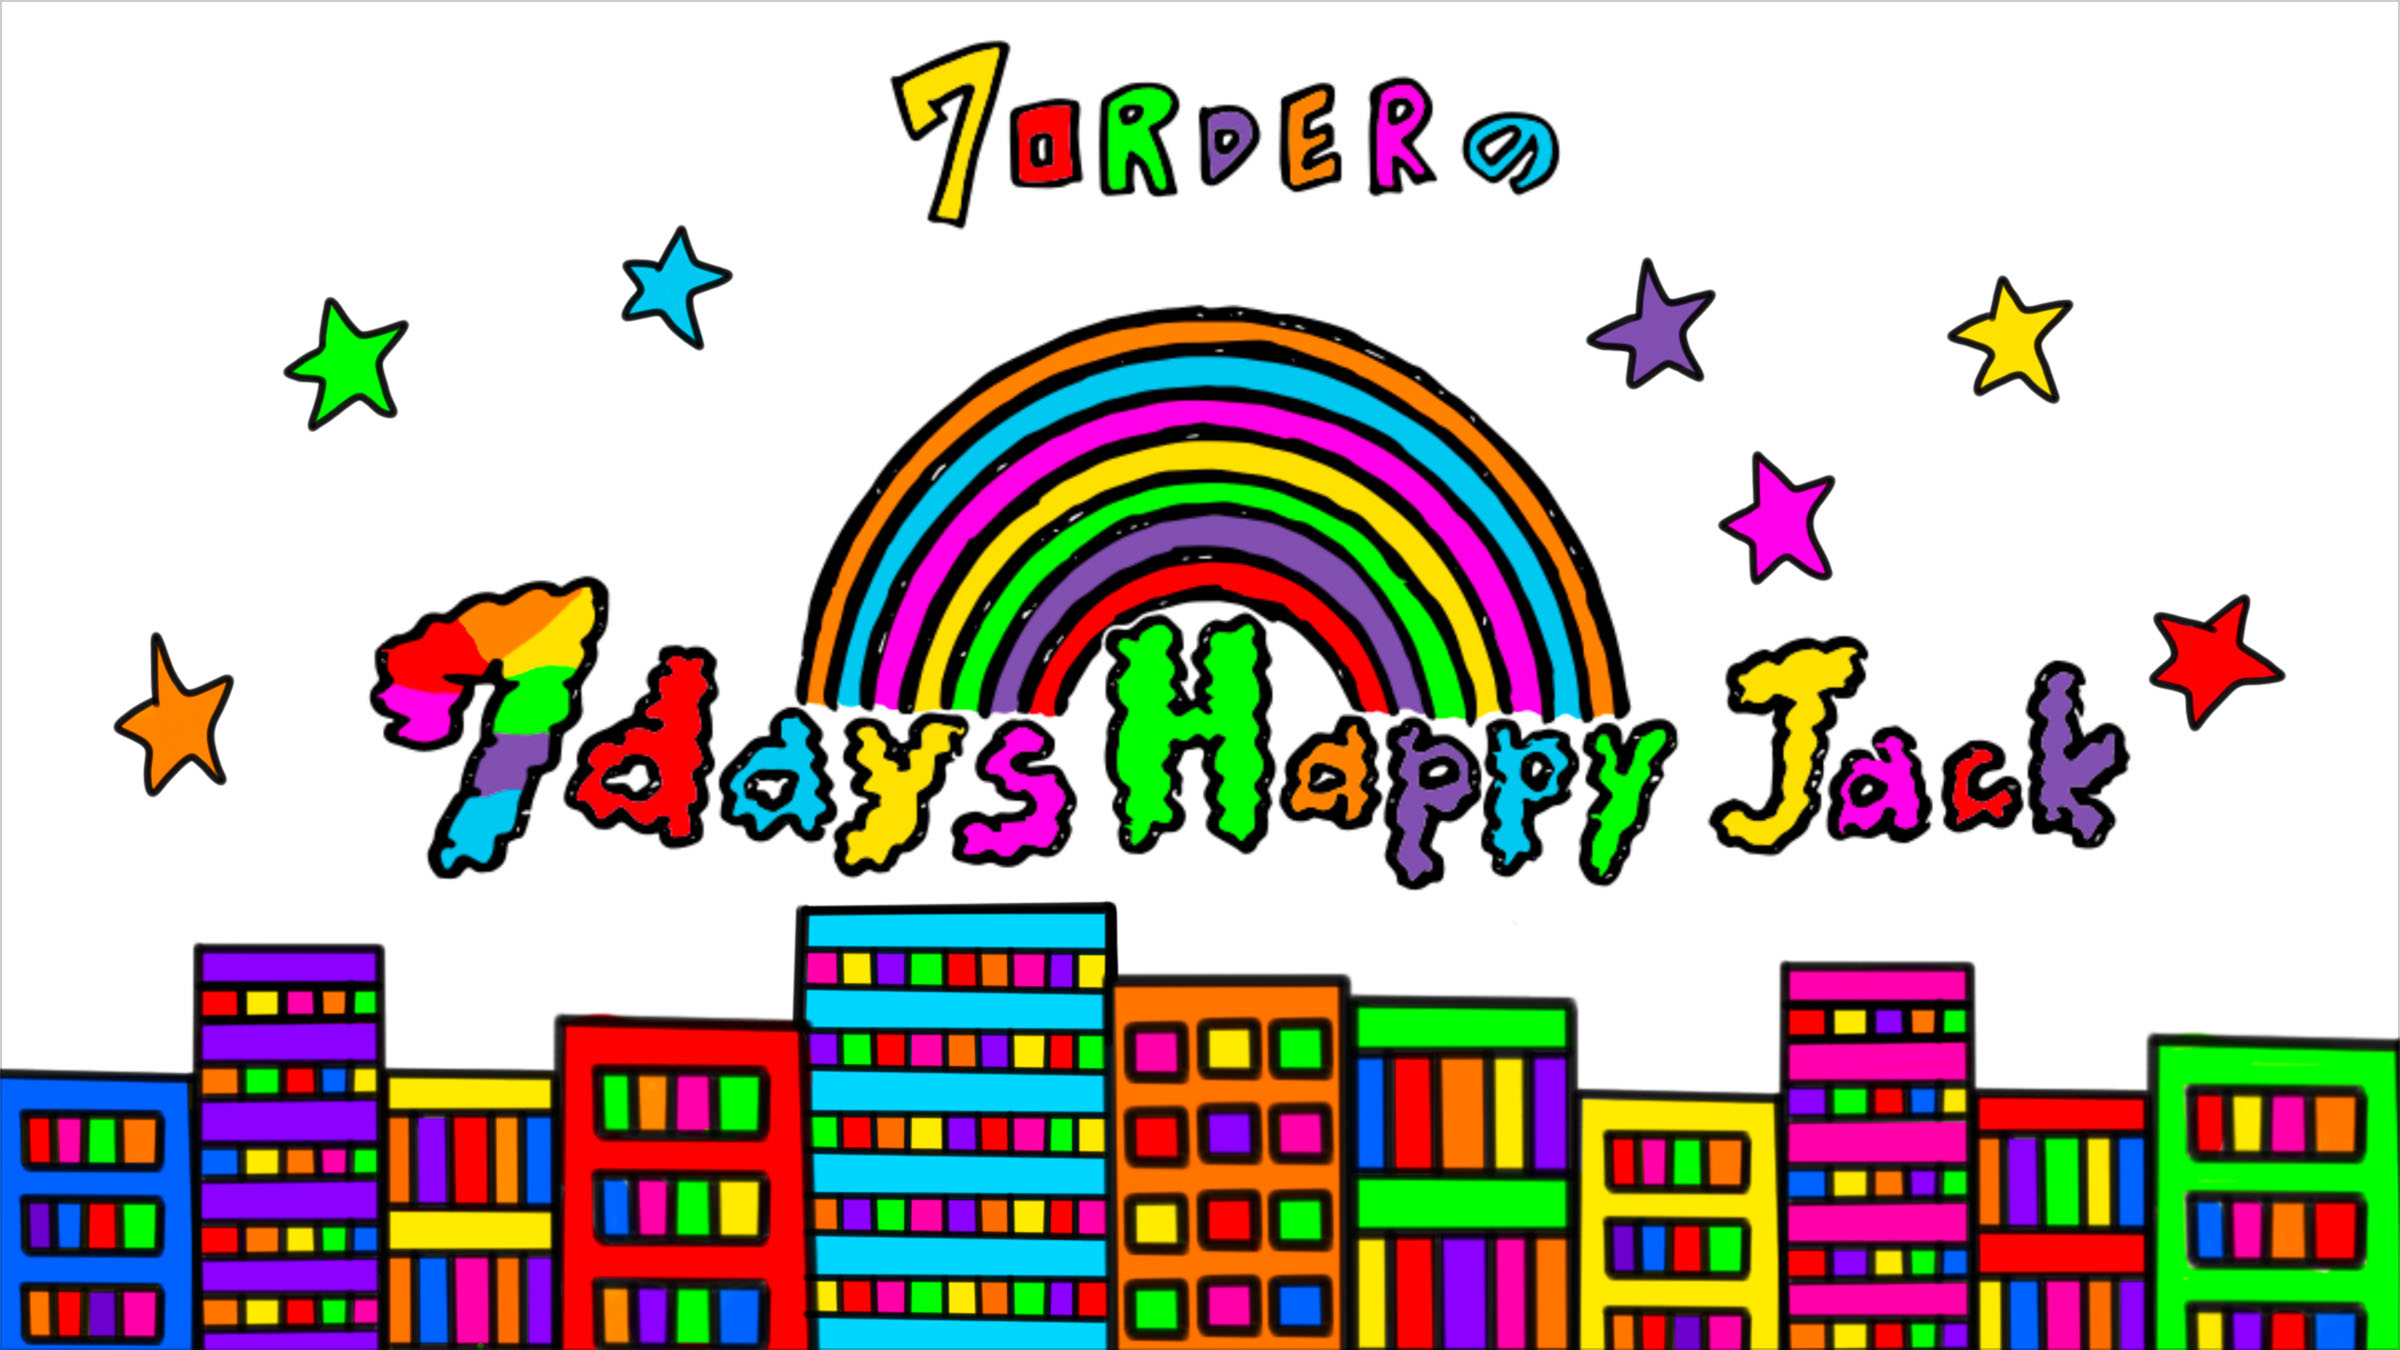 7ORDERの「7days Happy Jack!」